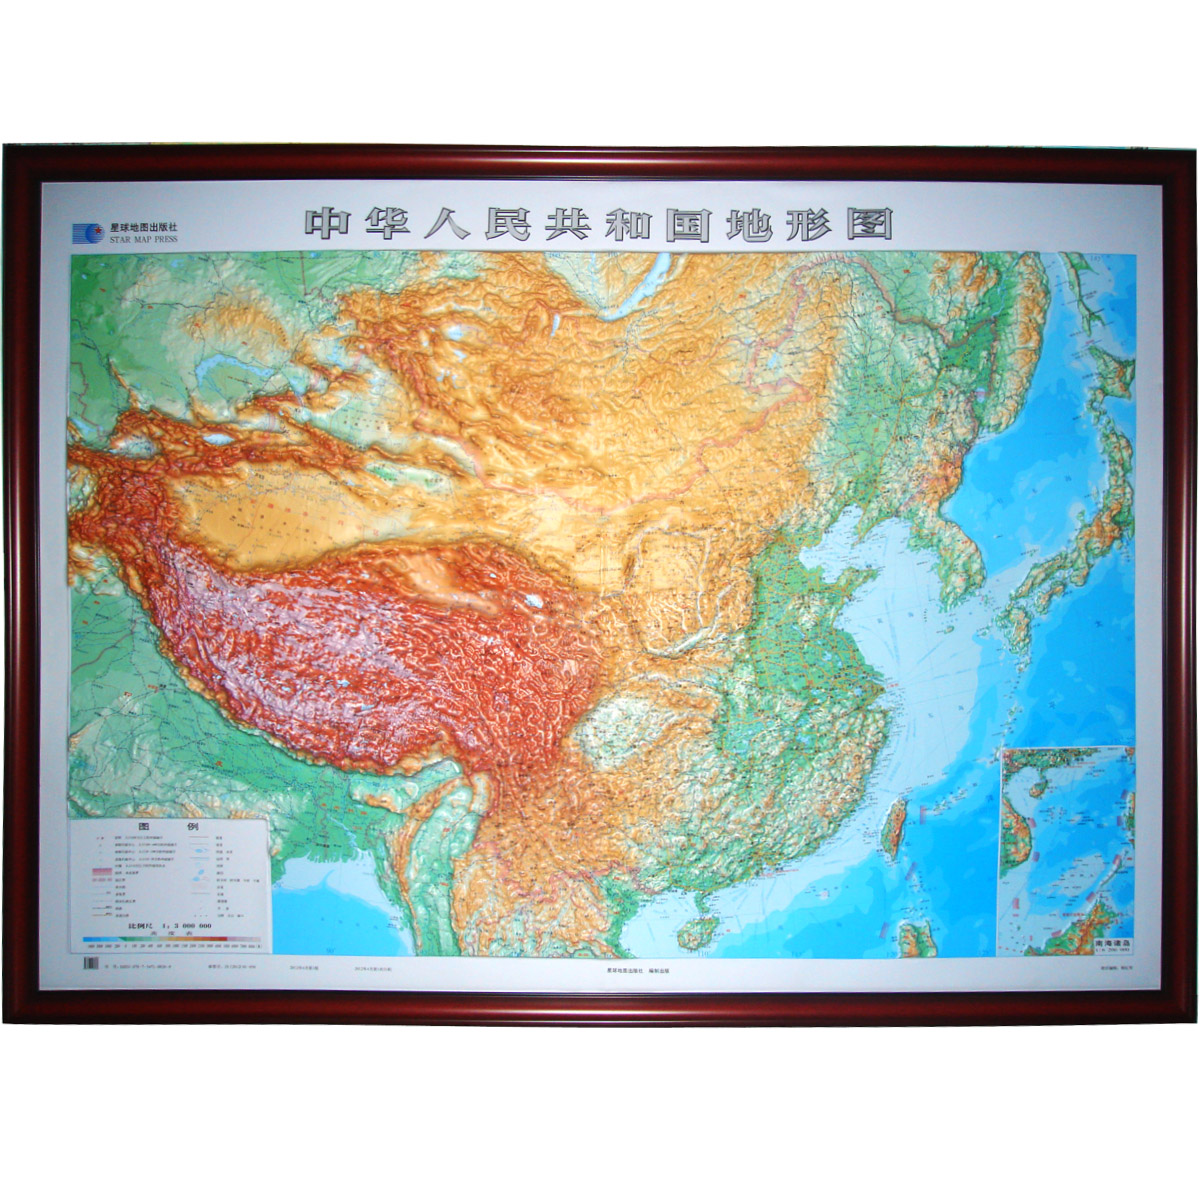 中国地图立体地形图边框定制带框挂图 约2.28米*1.68米